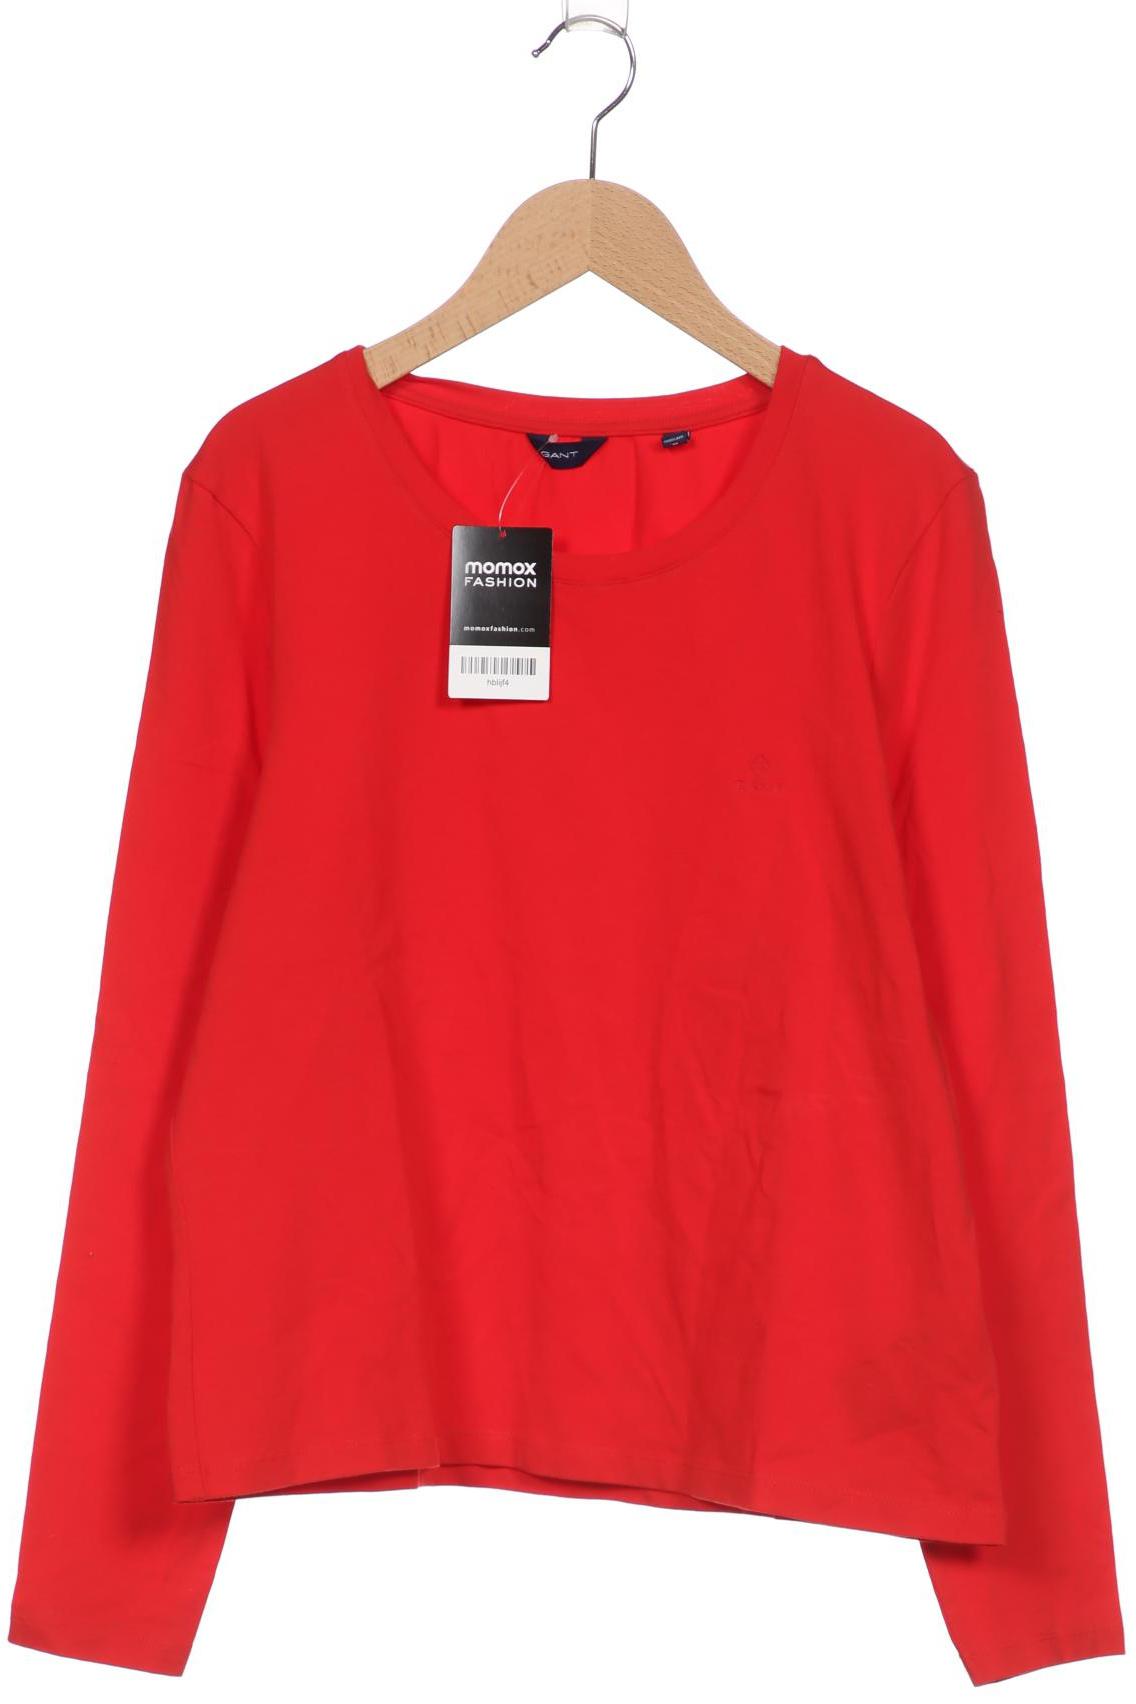 GANT Damen Langarmshirt, rot von Gant